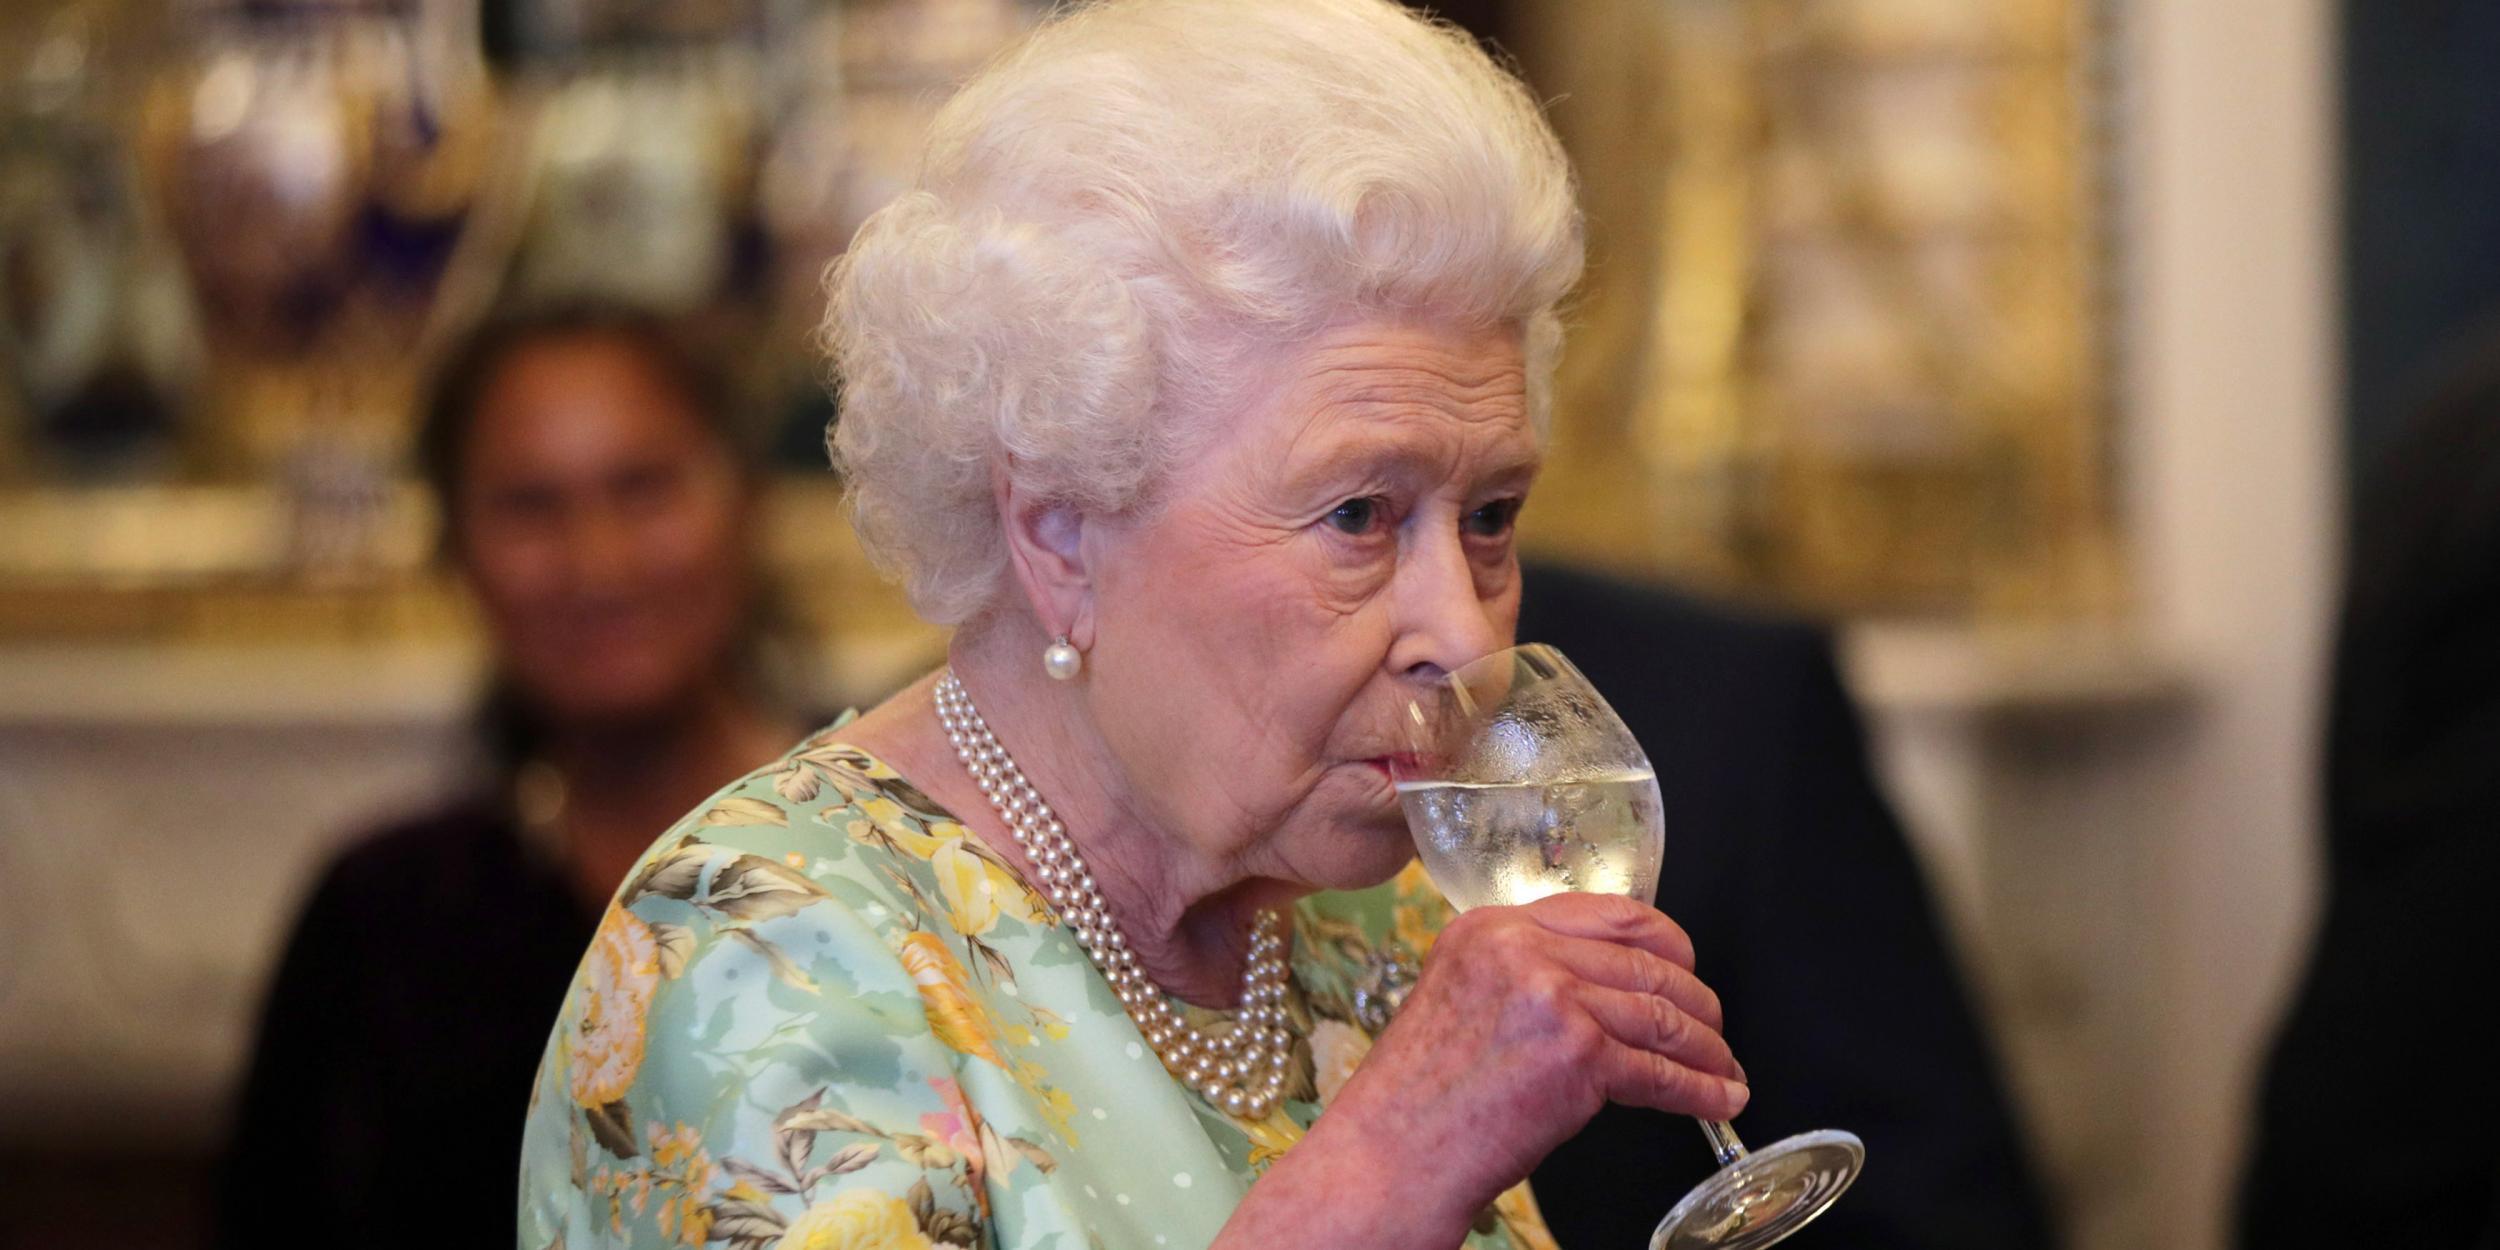 La reina Elizabeth II lanza su propia marca de cerveza